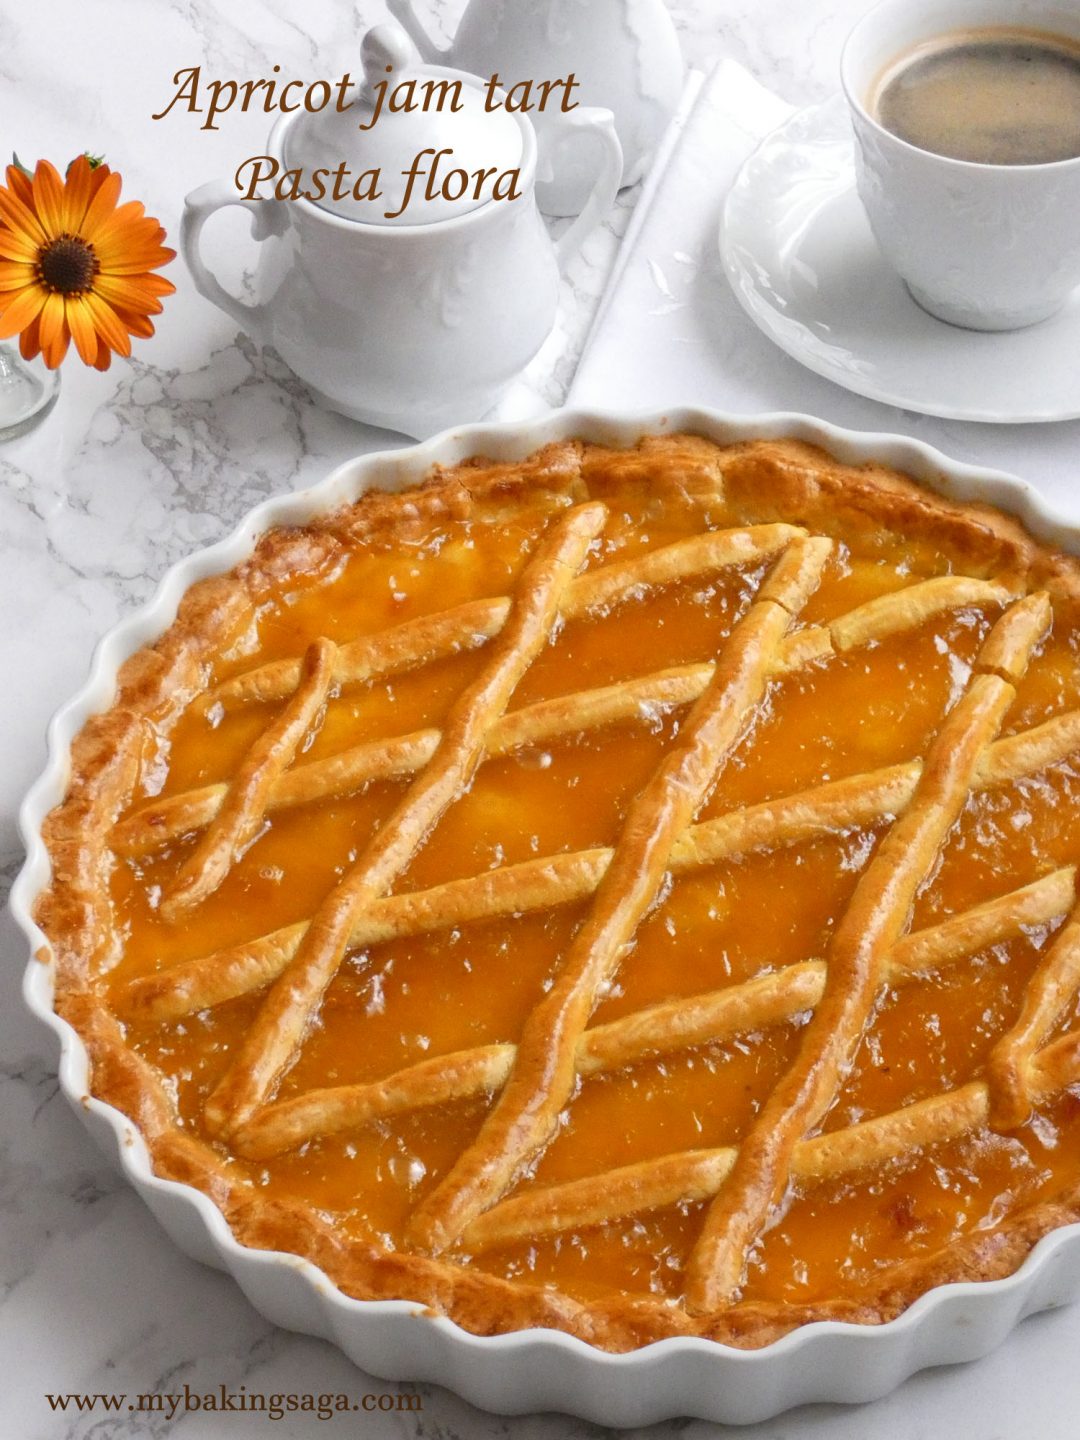 Apricot jam tart - Pasta flora